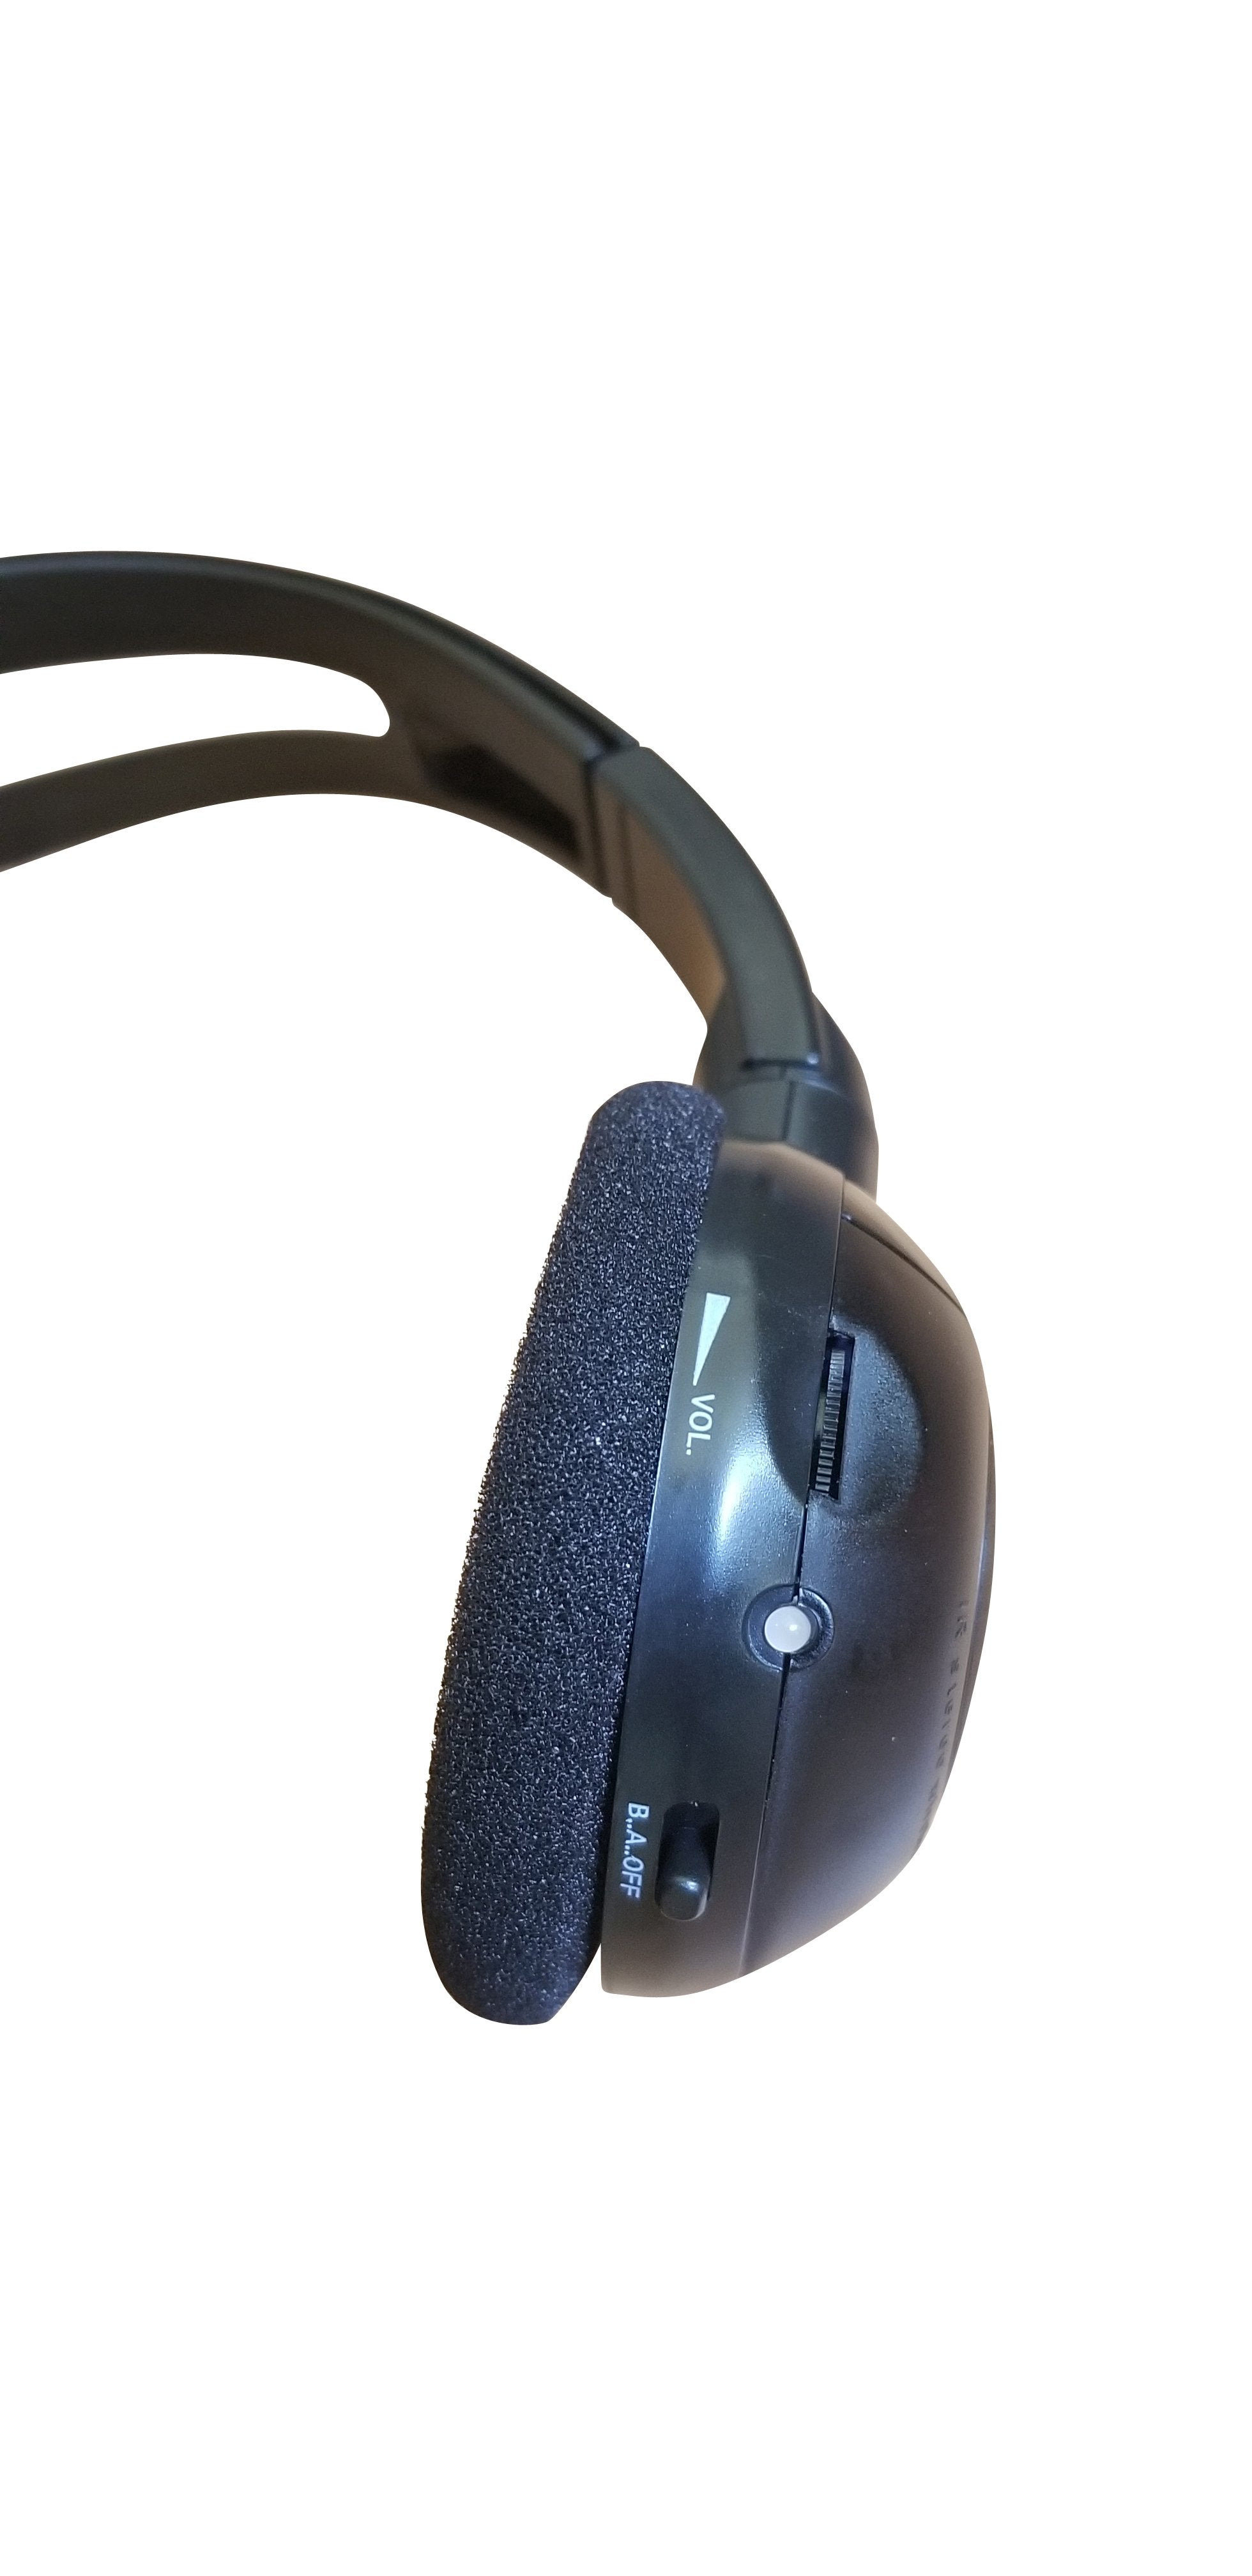 2020 GMC Savana Wireless DVD Headphone